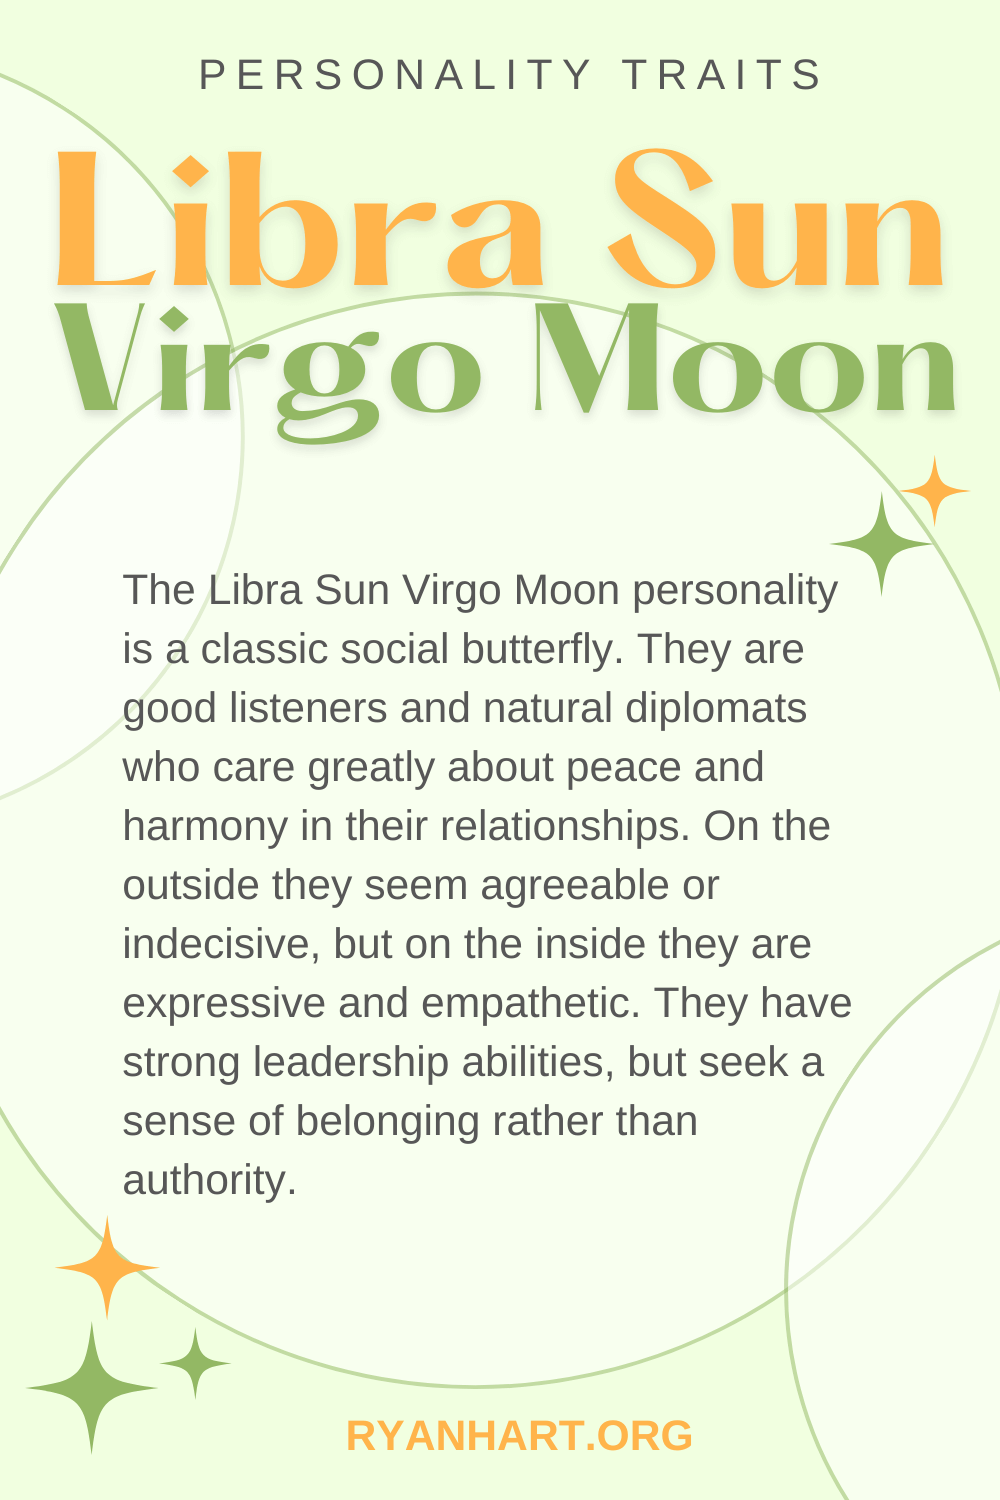 Libra Sun Virgo Moon Description